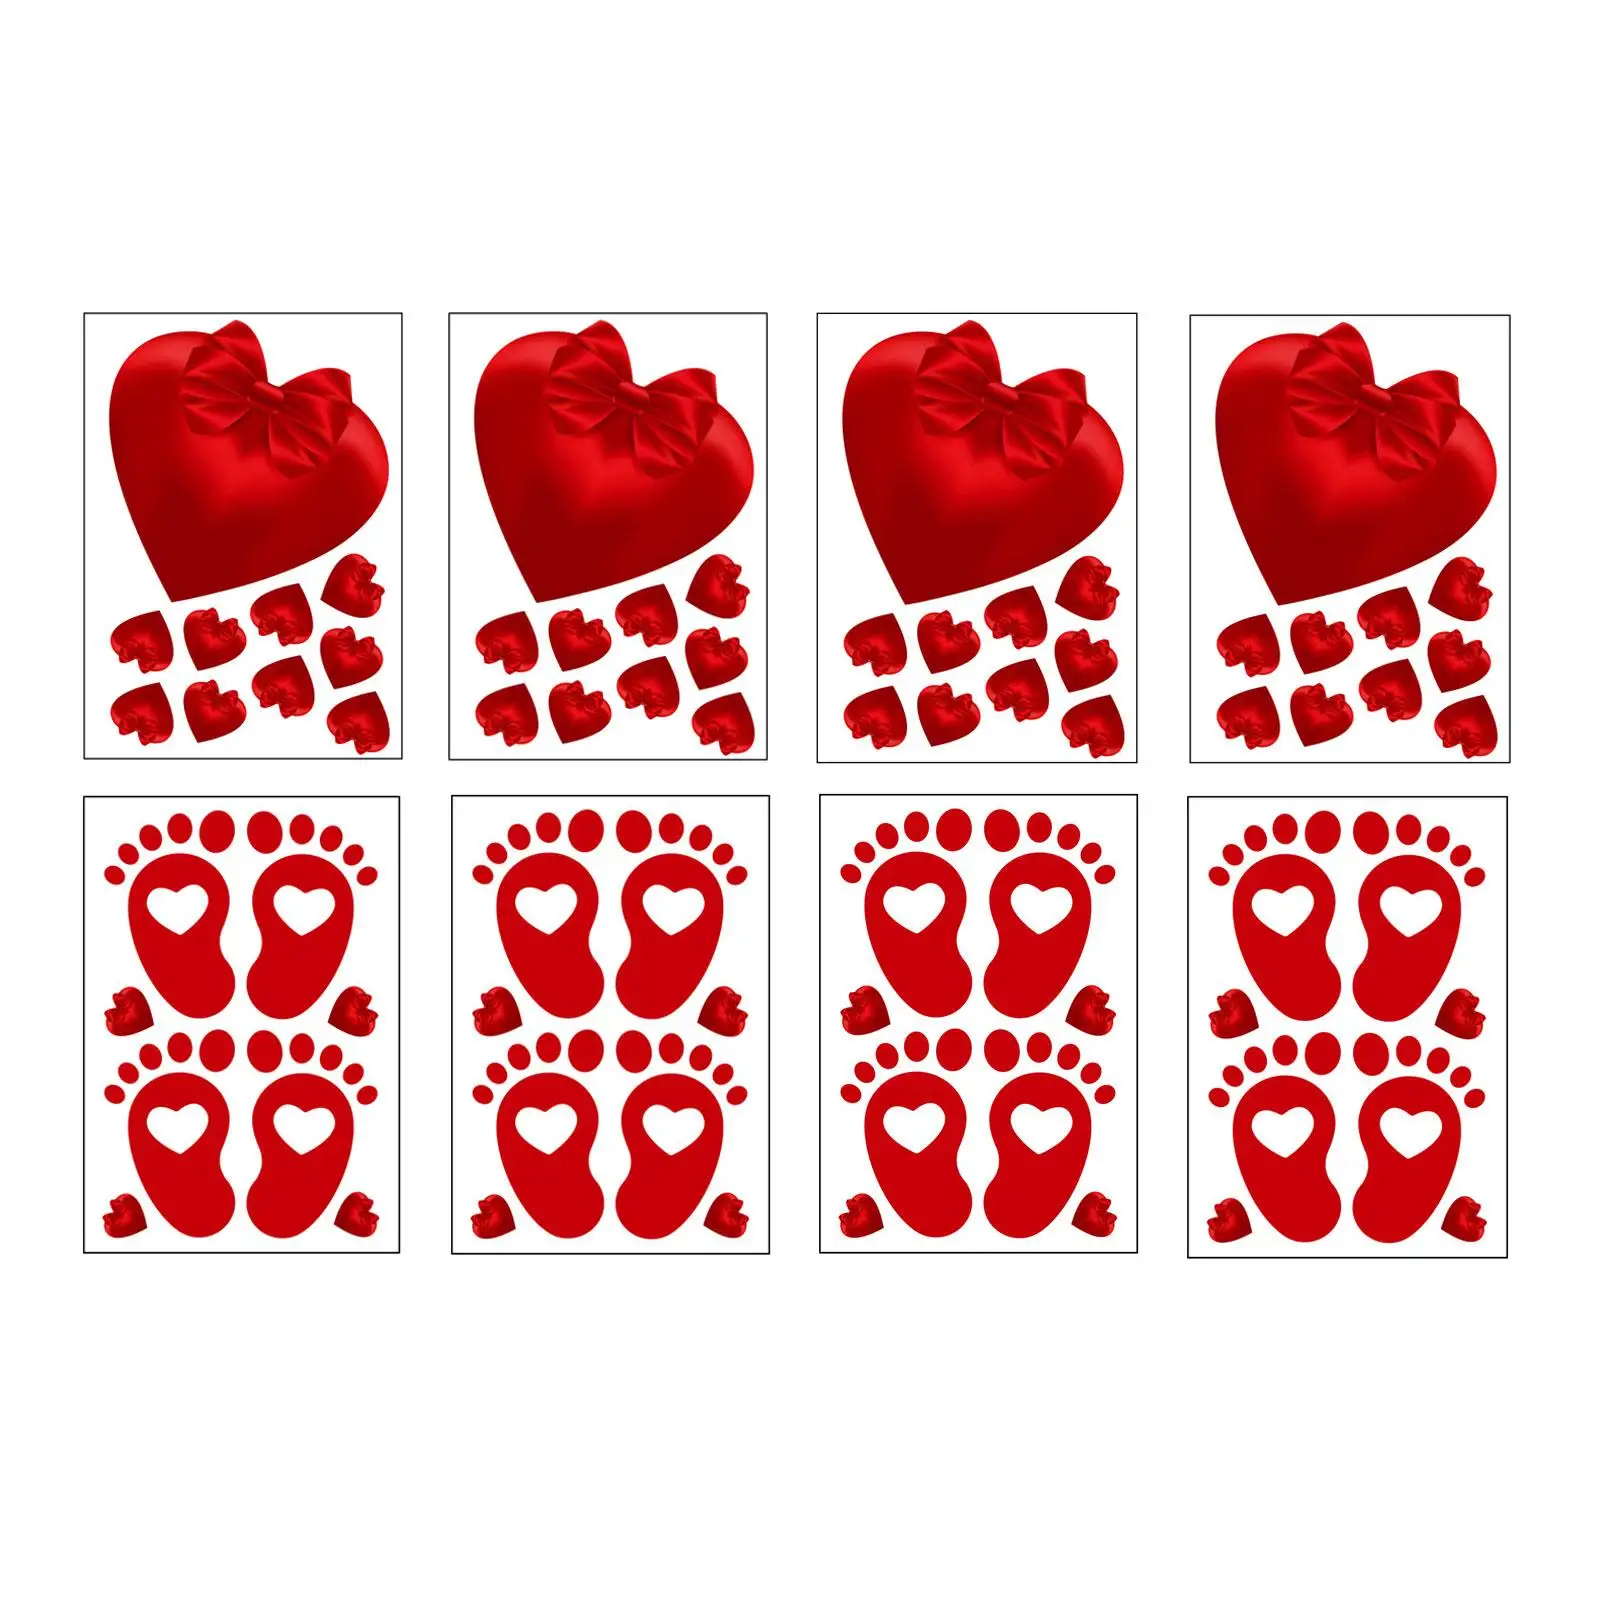 8x Романтических оконных наклеек на День Святого Валентина, съемная оконная наклейка для Валентинок